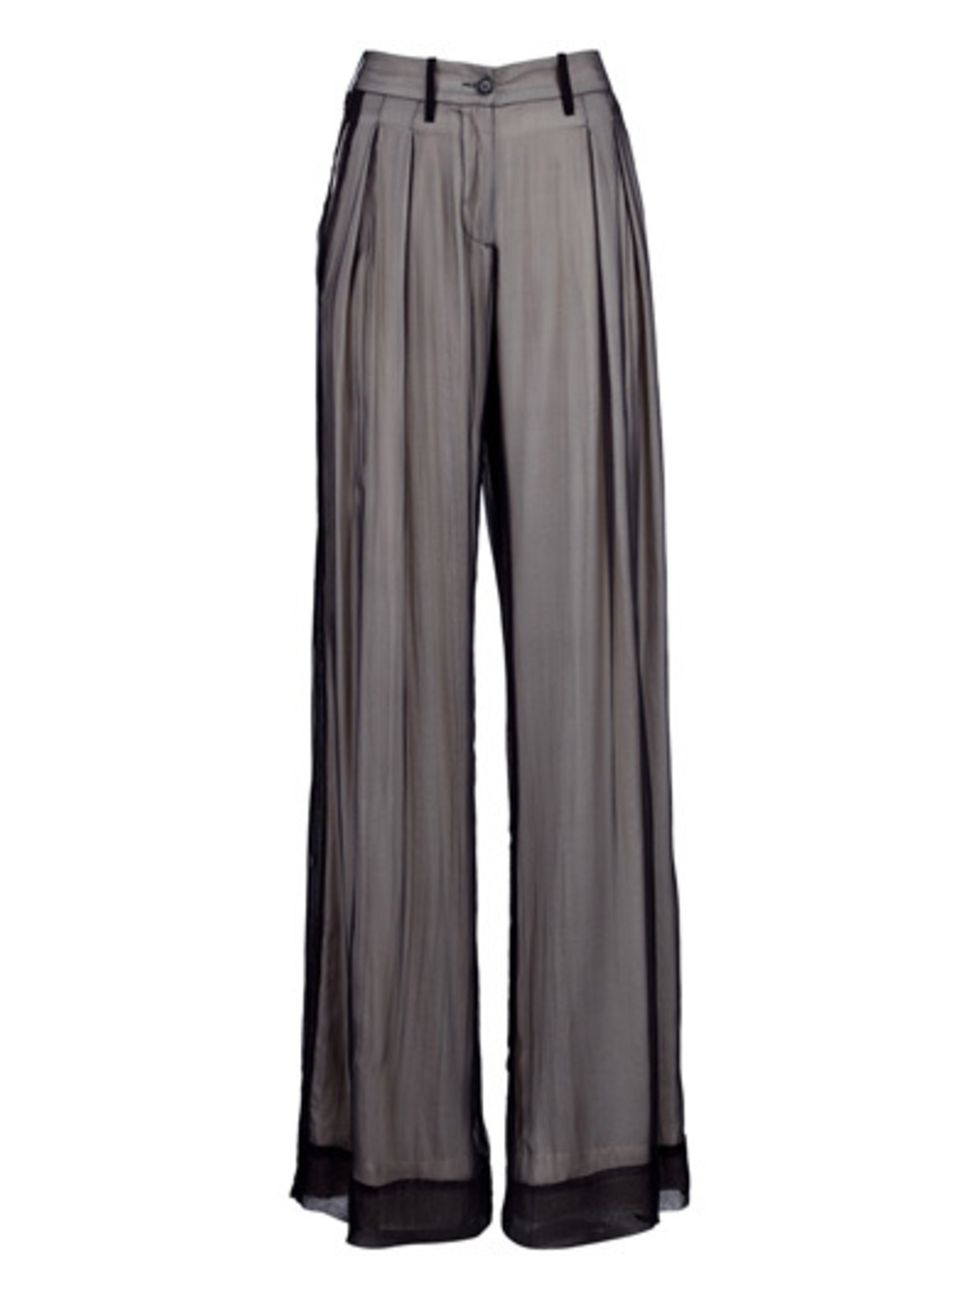 Textile, Standing, Active shorts, Denim, Black, Grey, Pocket, Khaki, Active pants, Clothes hanger, 